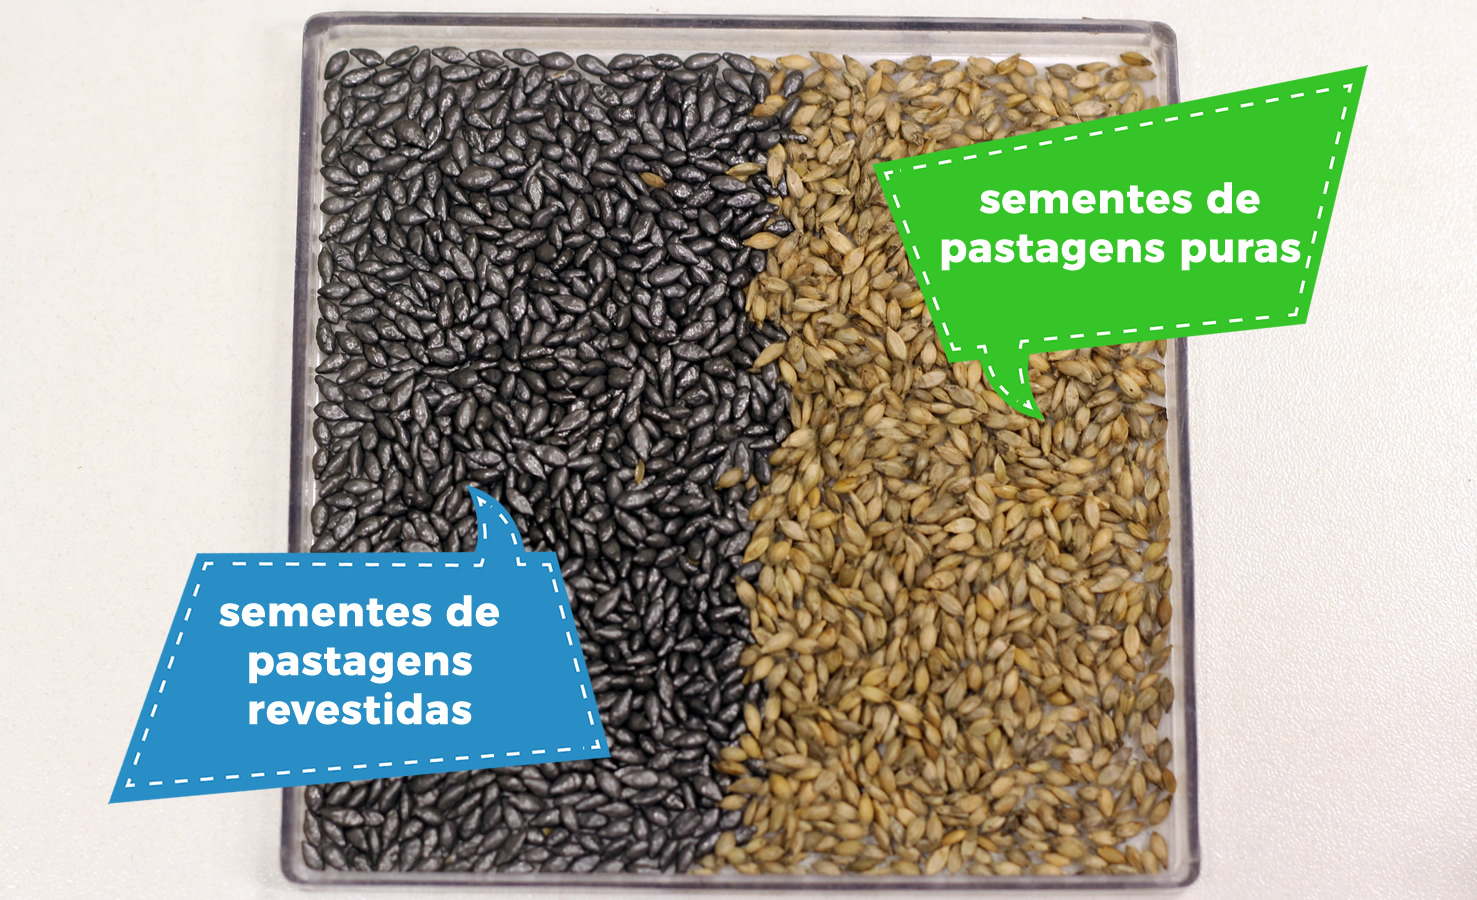 Diferenças-nas-sementes-de-pastagens-puras-e-revestidas-grafico